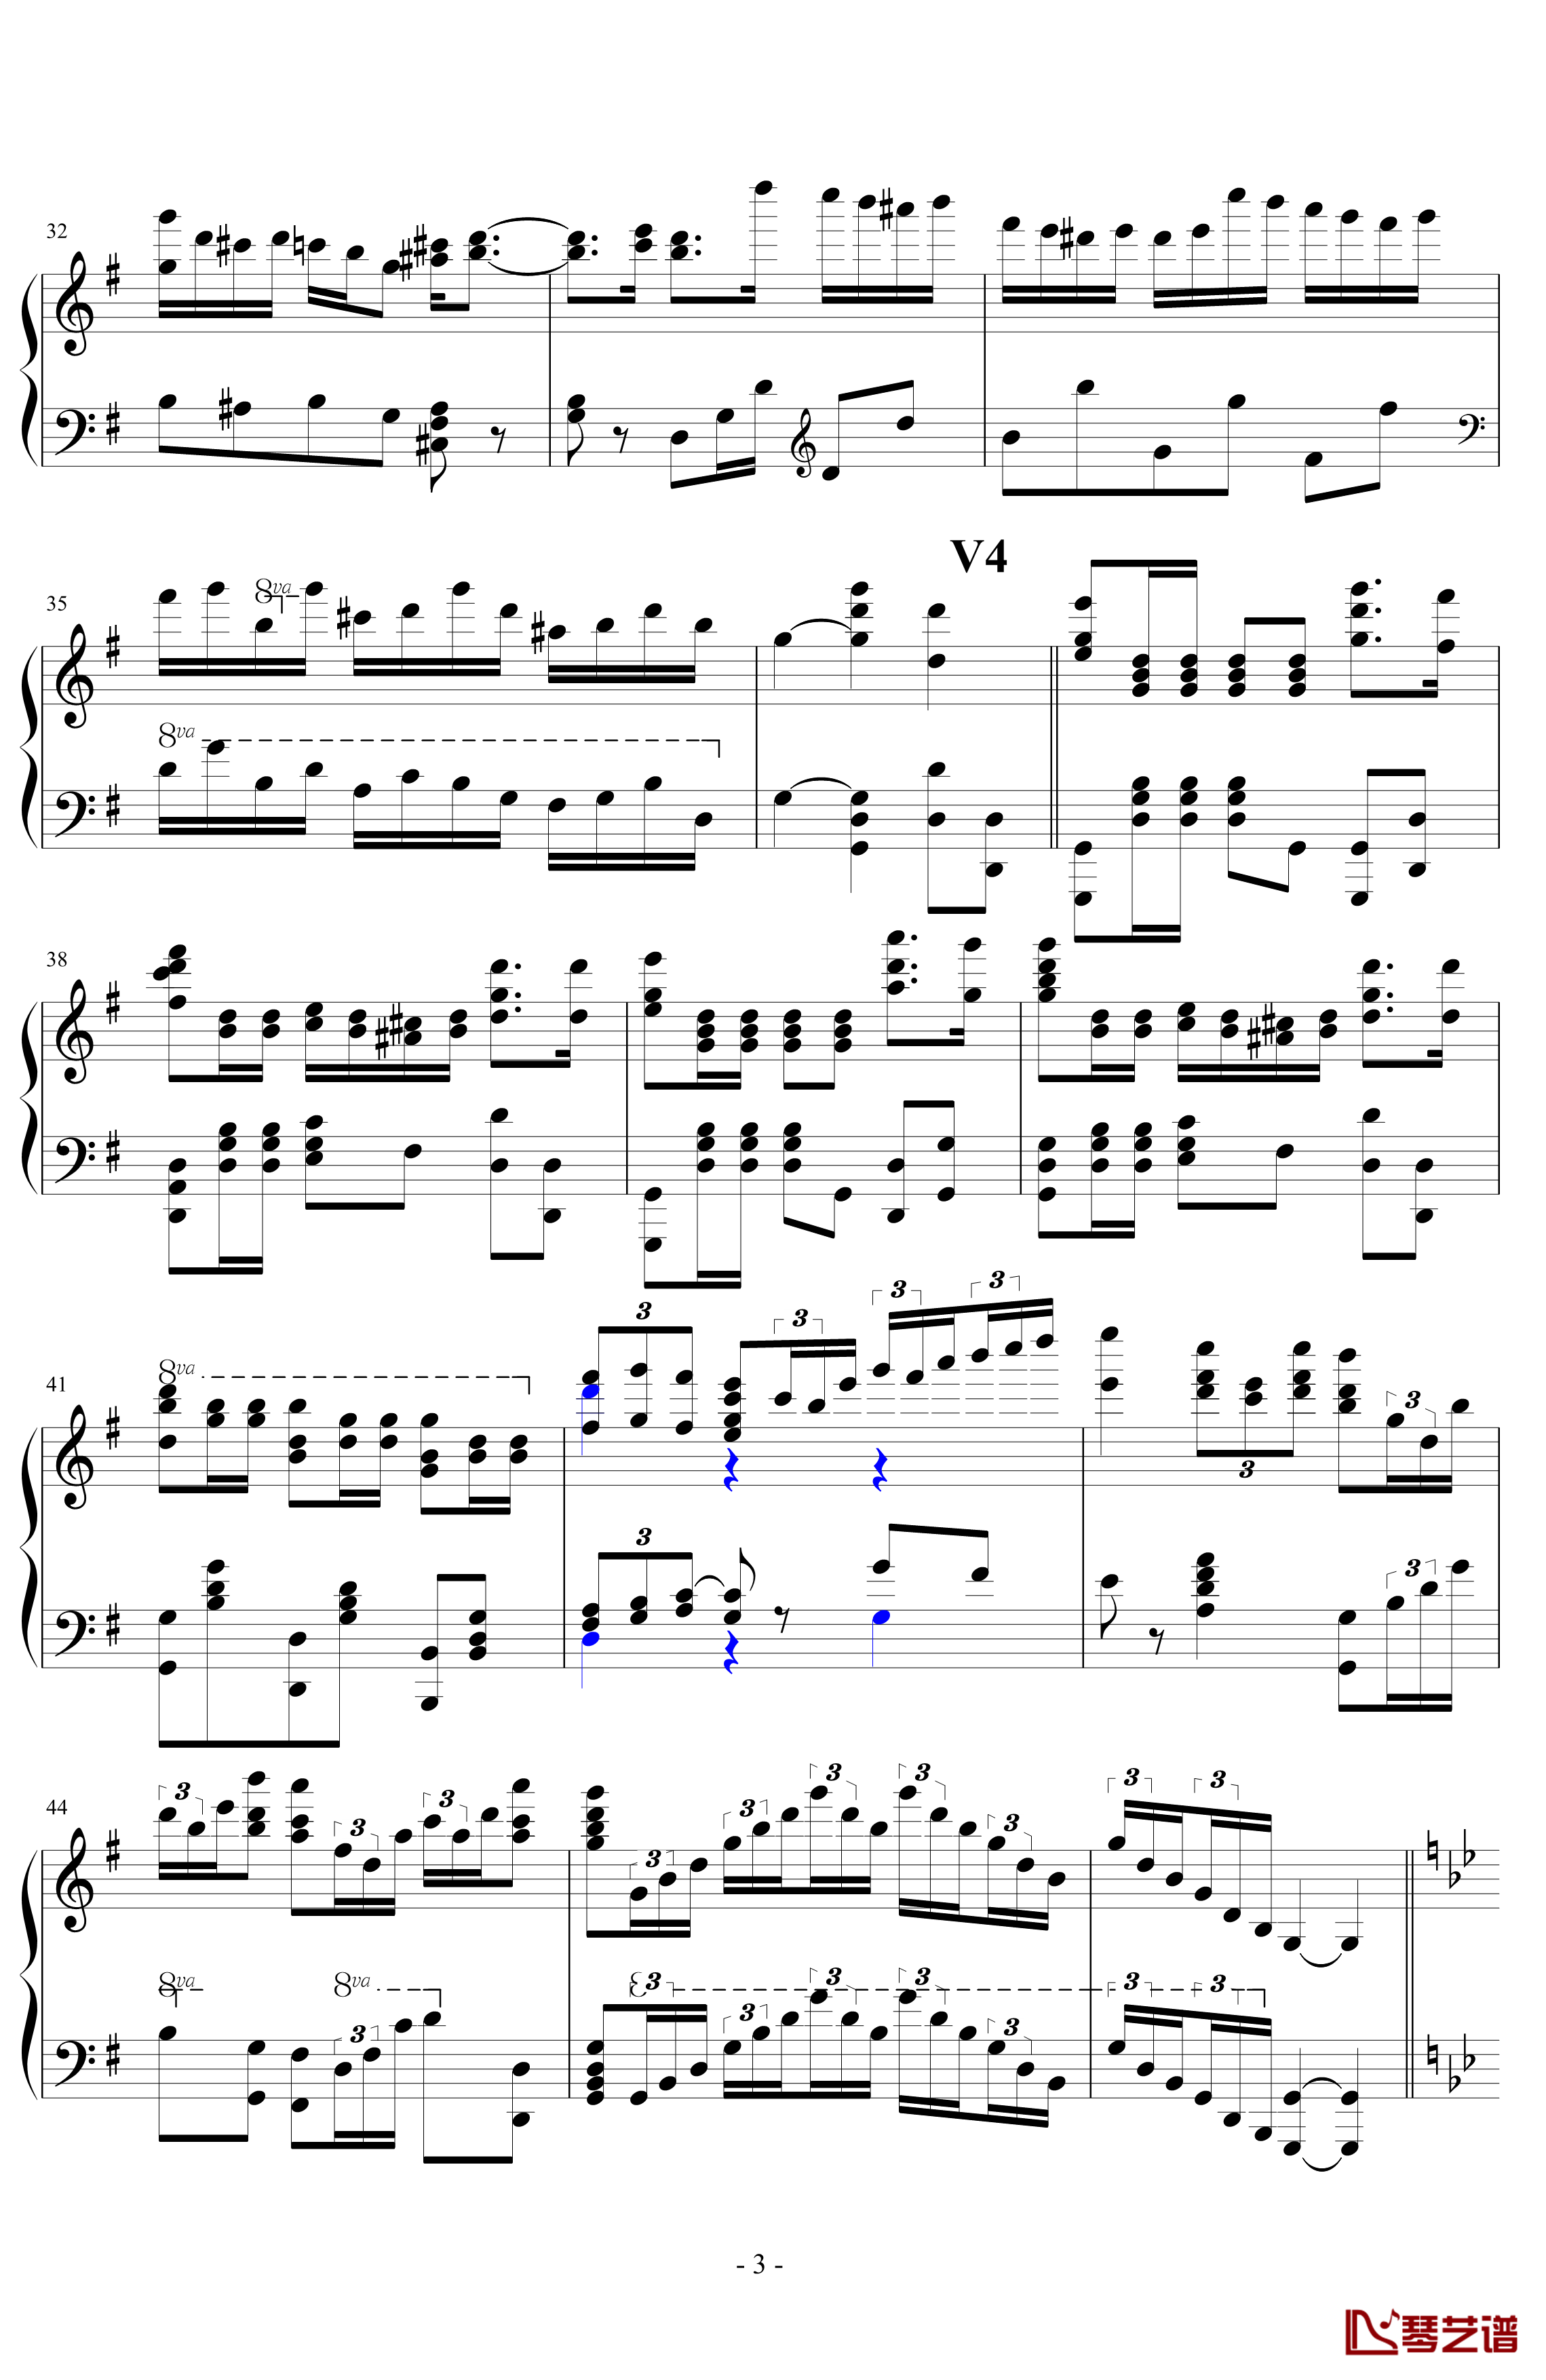 生日歌变奏曲钢琴谱-PARROT1863